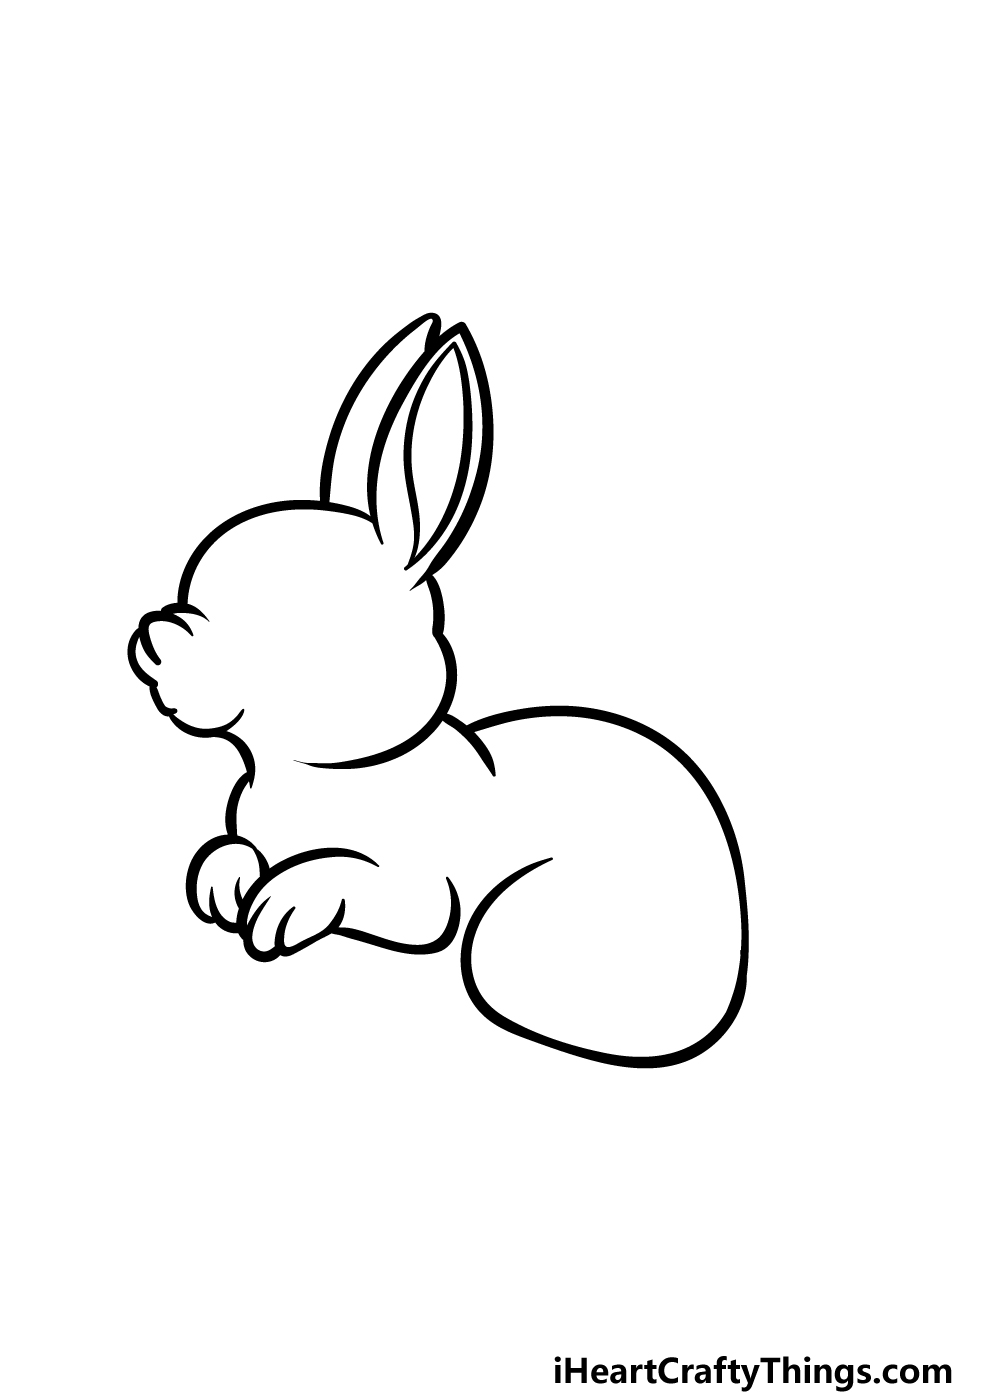 Con Thỏ Vẽ Hoạt Hình  Ảnh miễn phí trên Pixabay  Pixabay